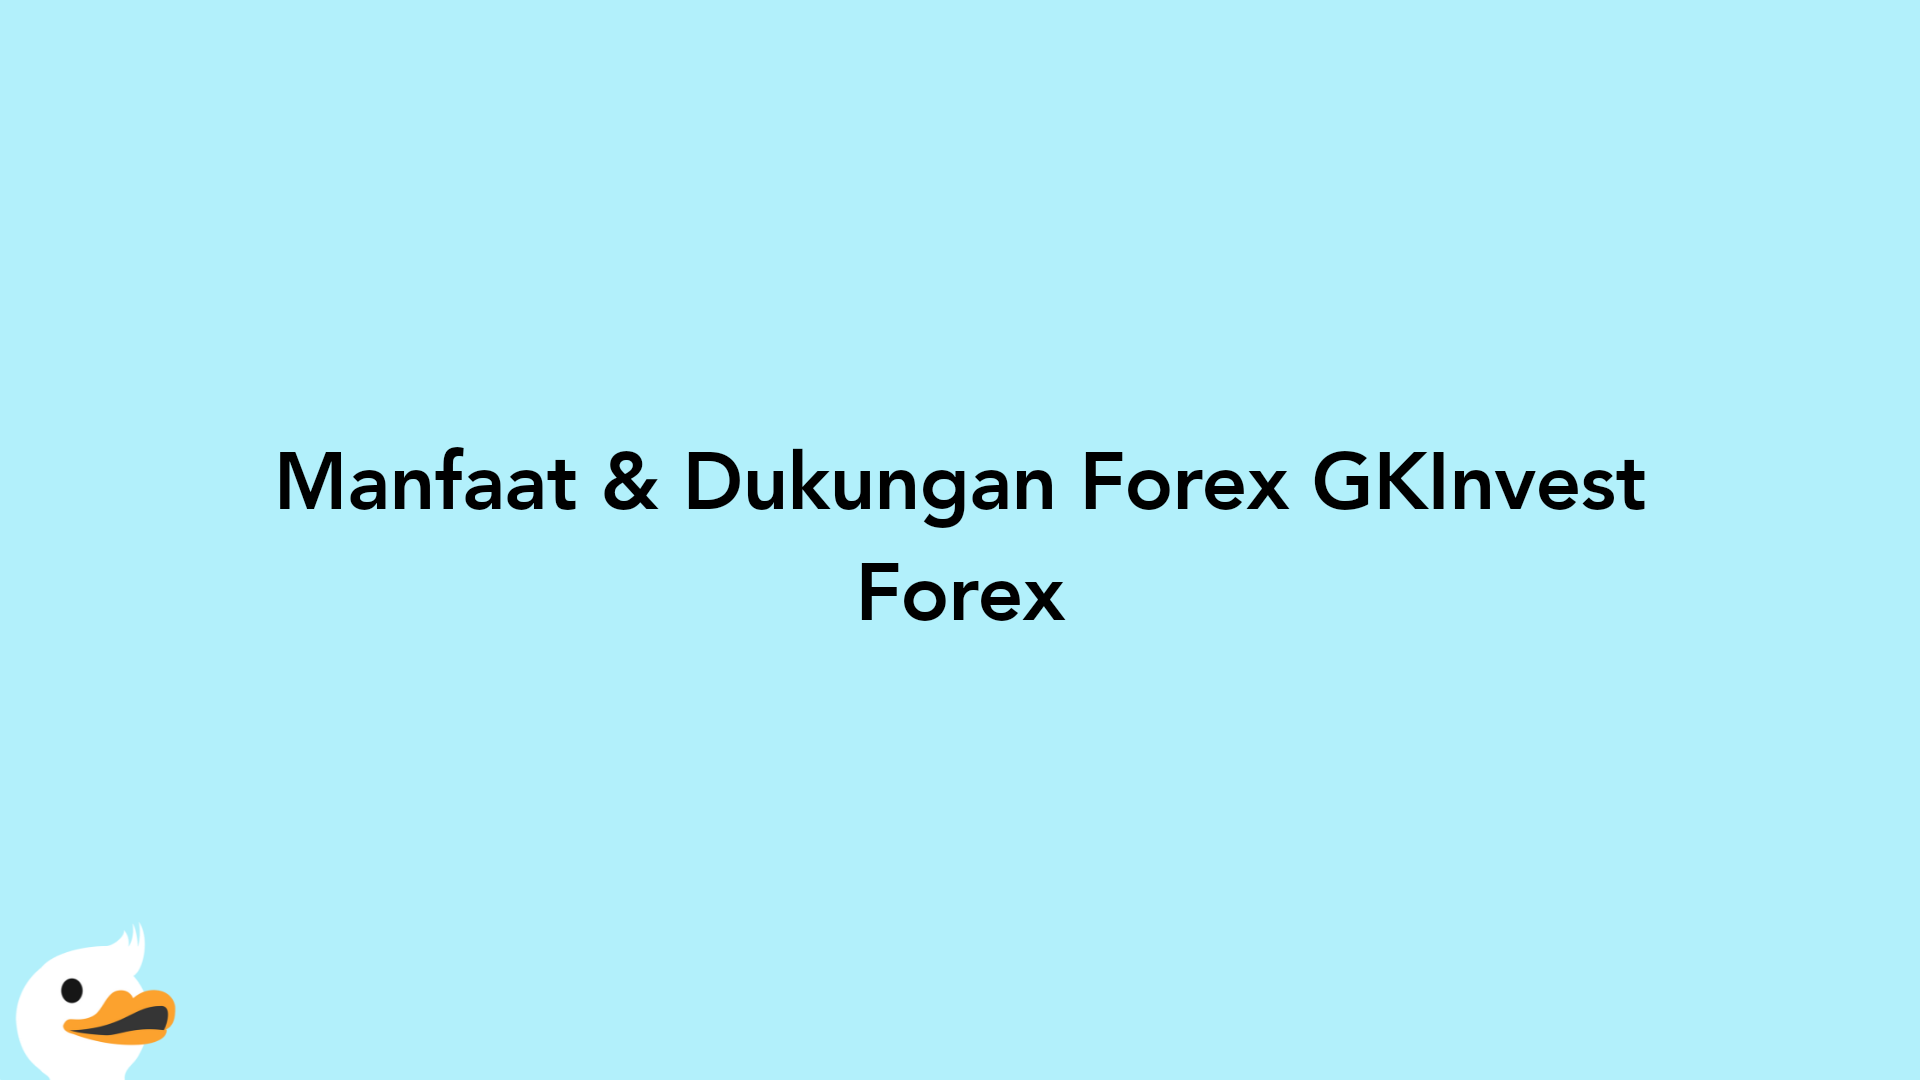 Manfaat & Dukungan Forex GKInvest Forex